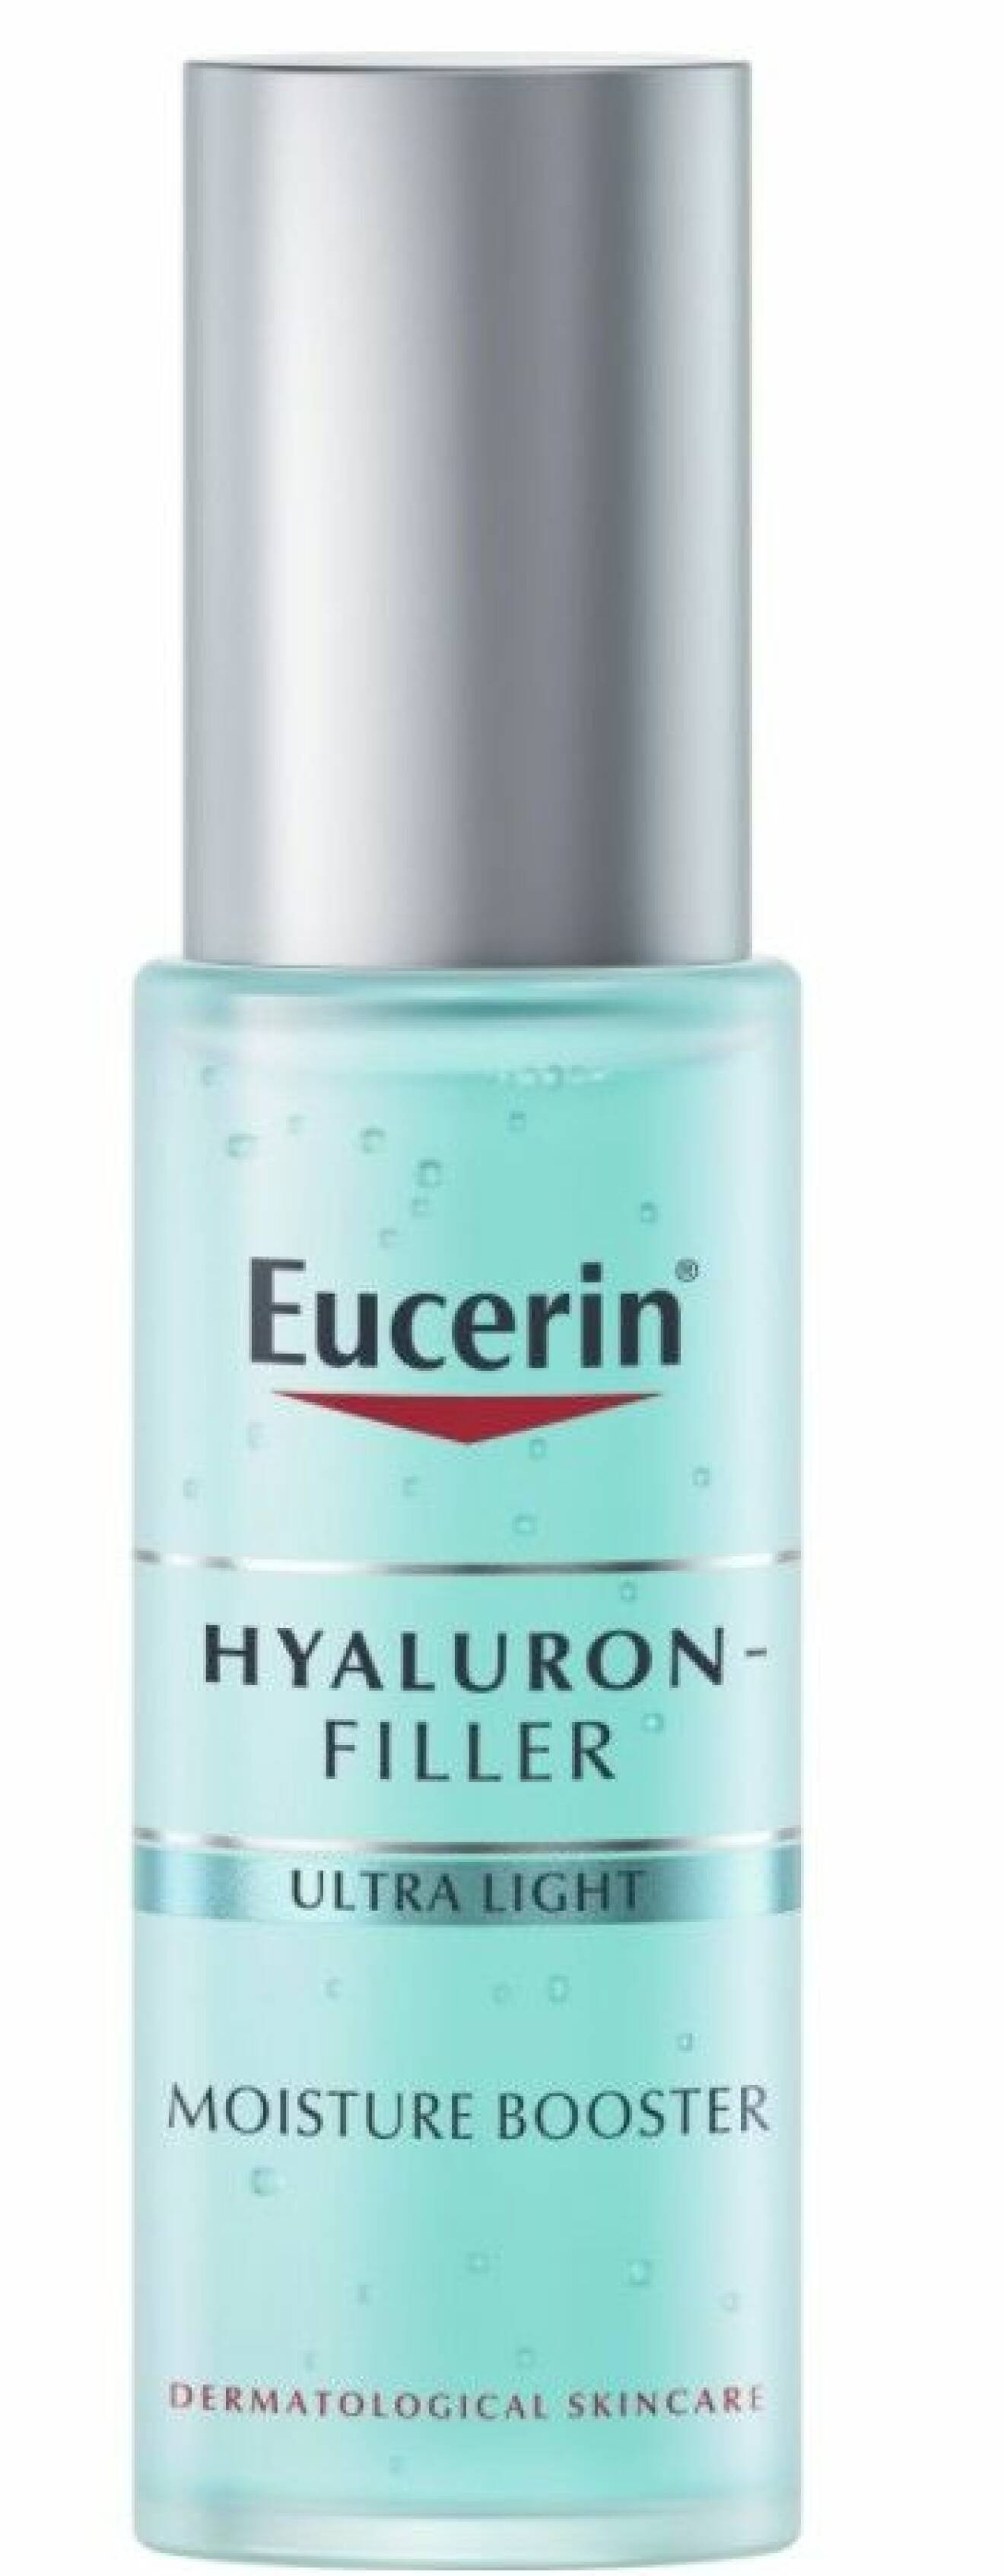 Eucerin Hyaluron-Filler Moisture Booster